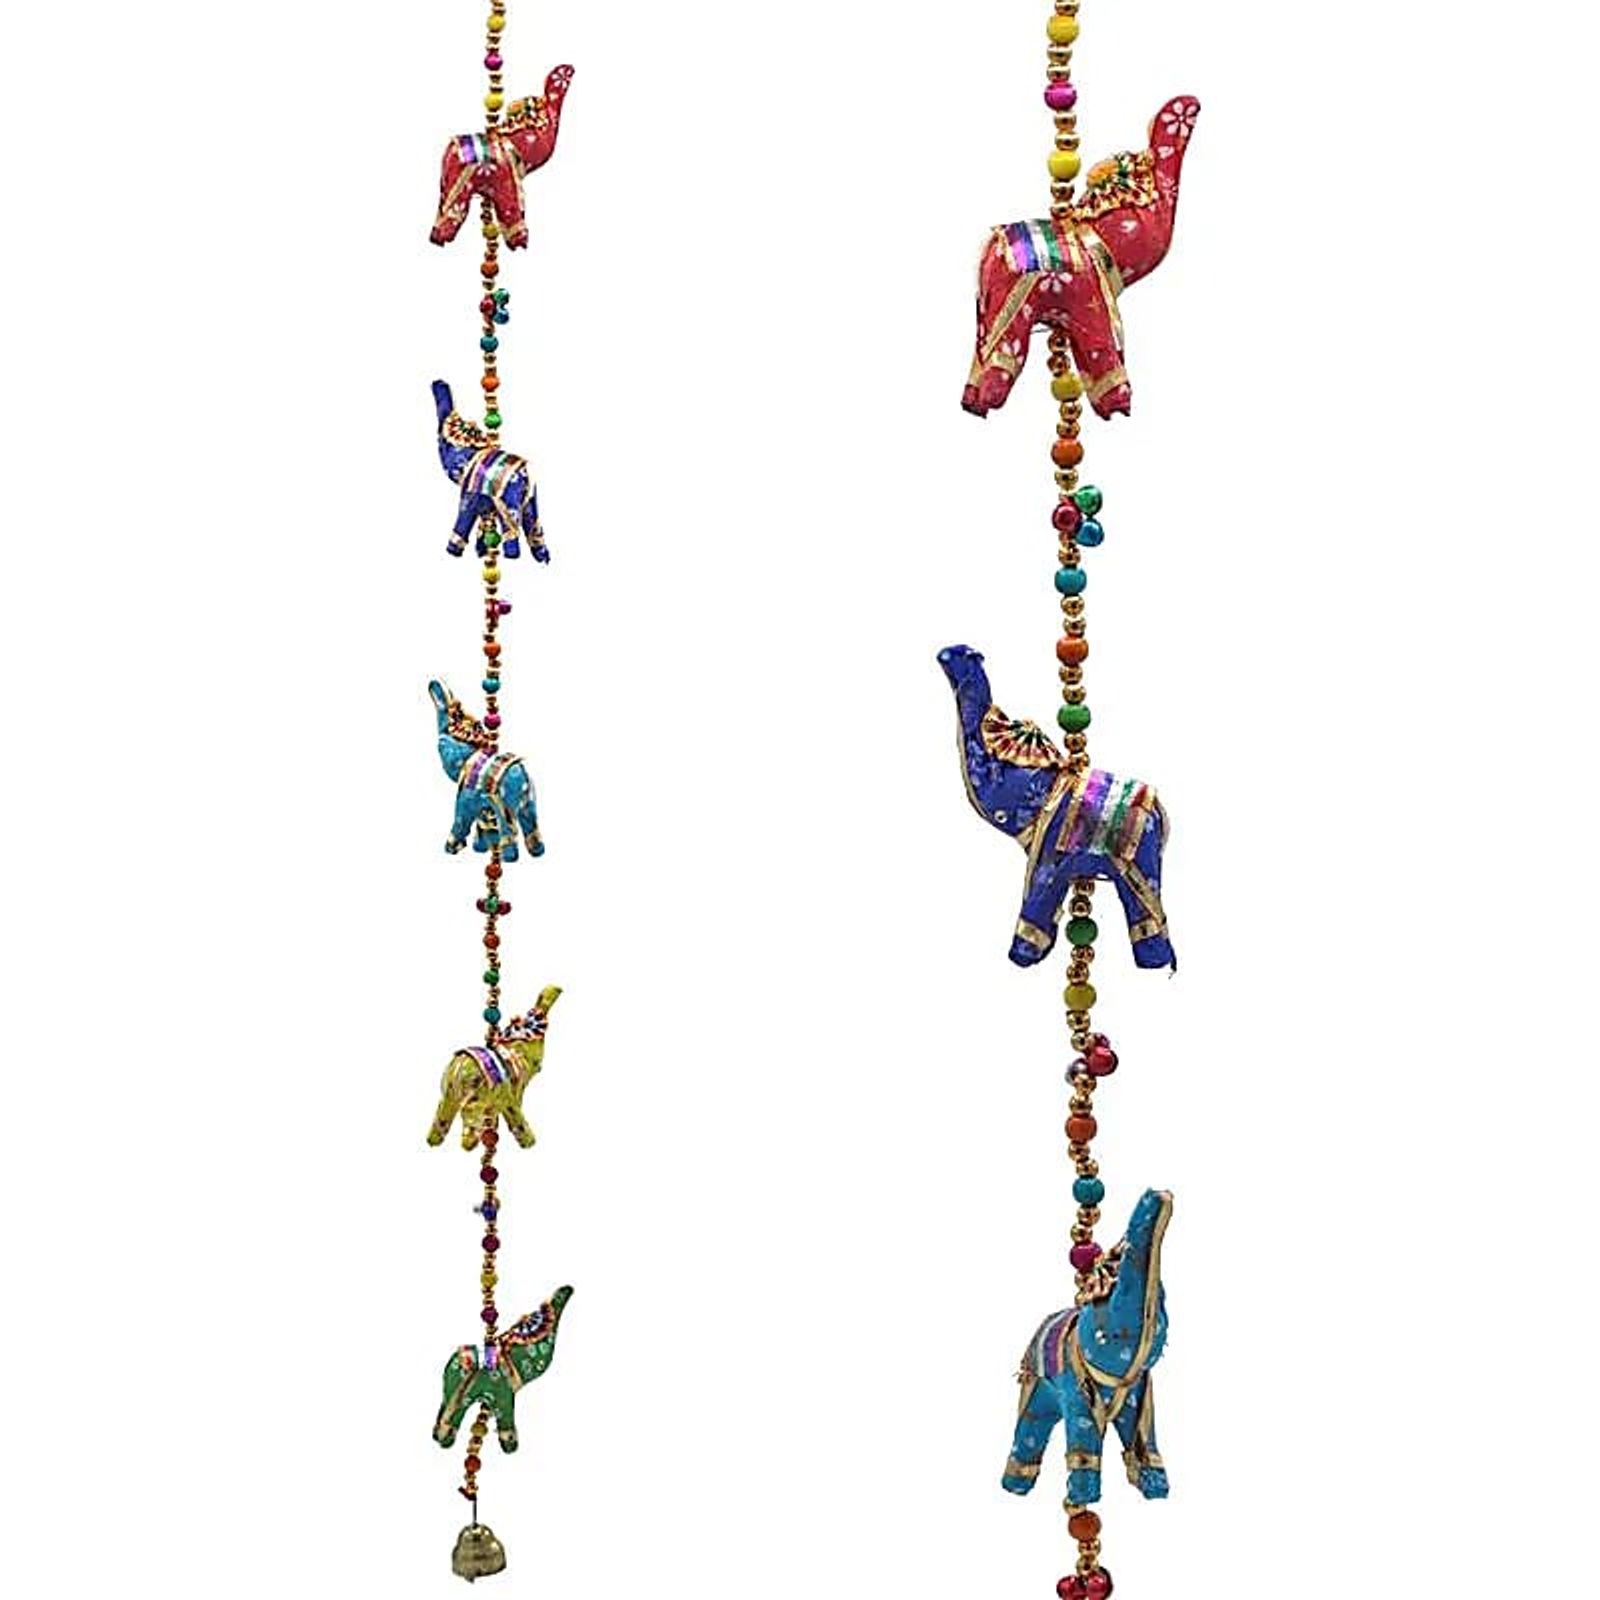 Dekorative Girlande mit Elefanten aus Stoff -- 80 cm